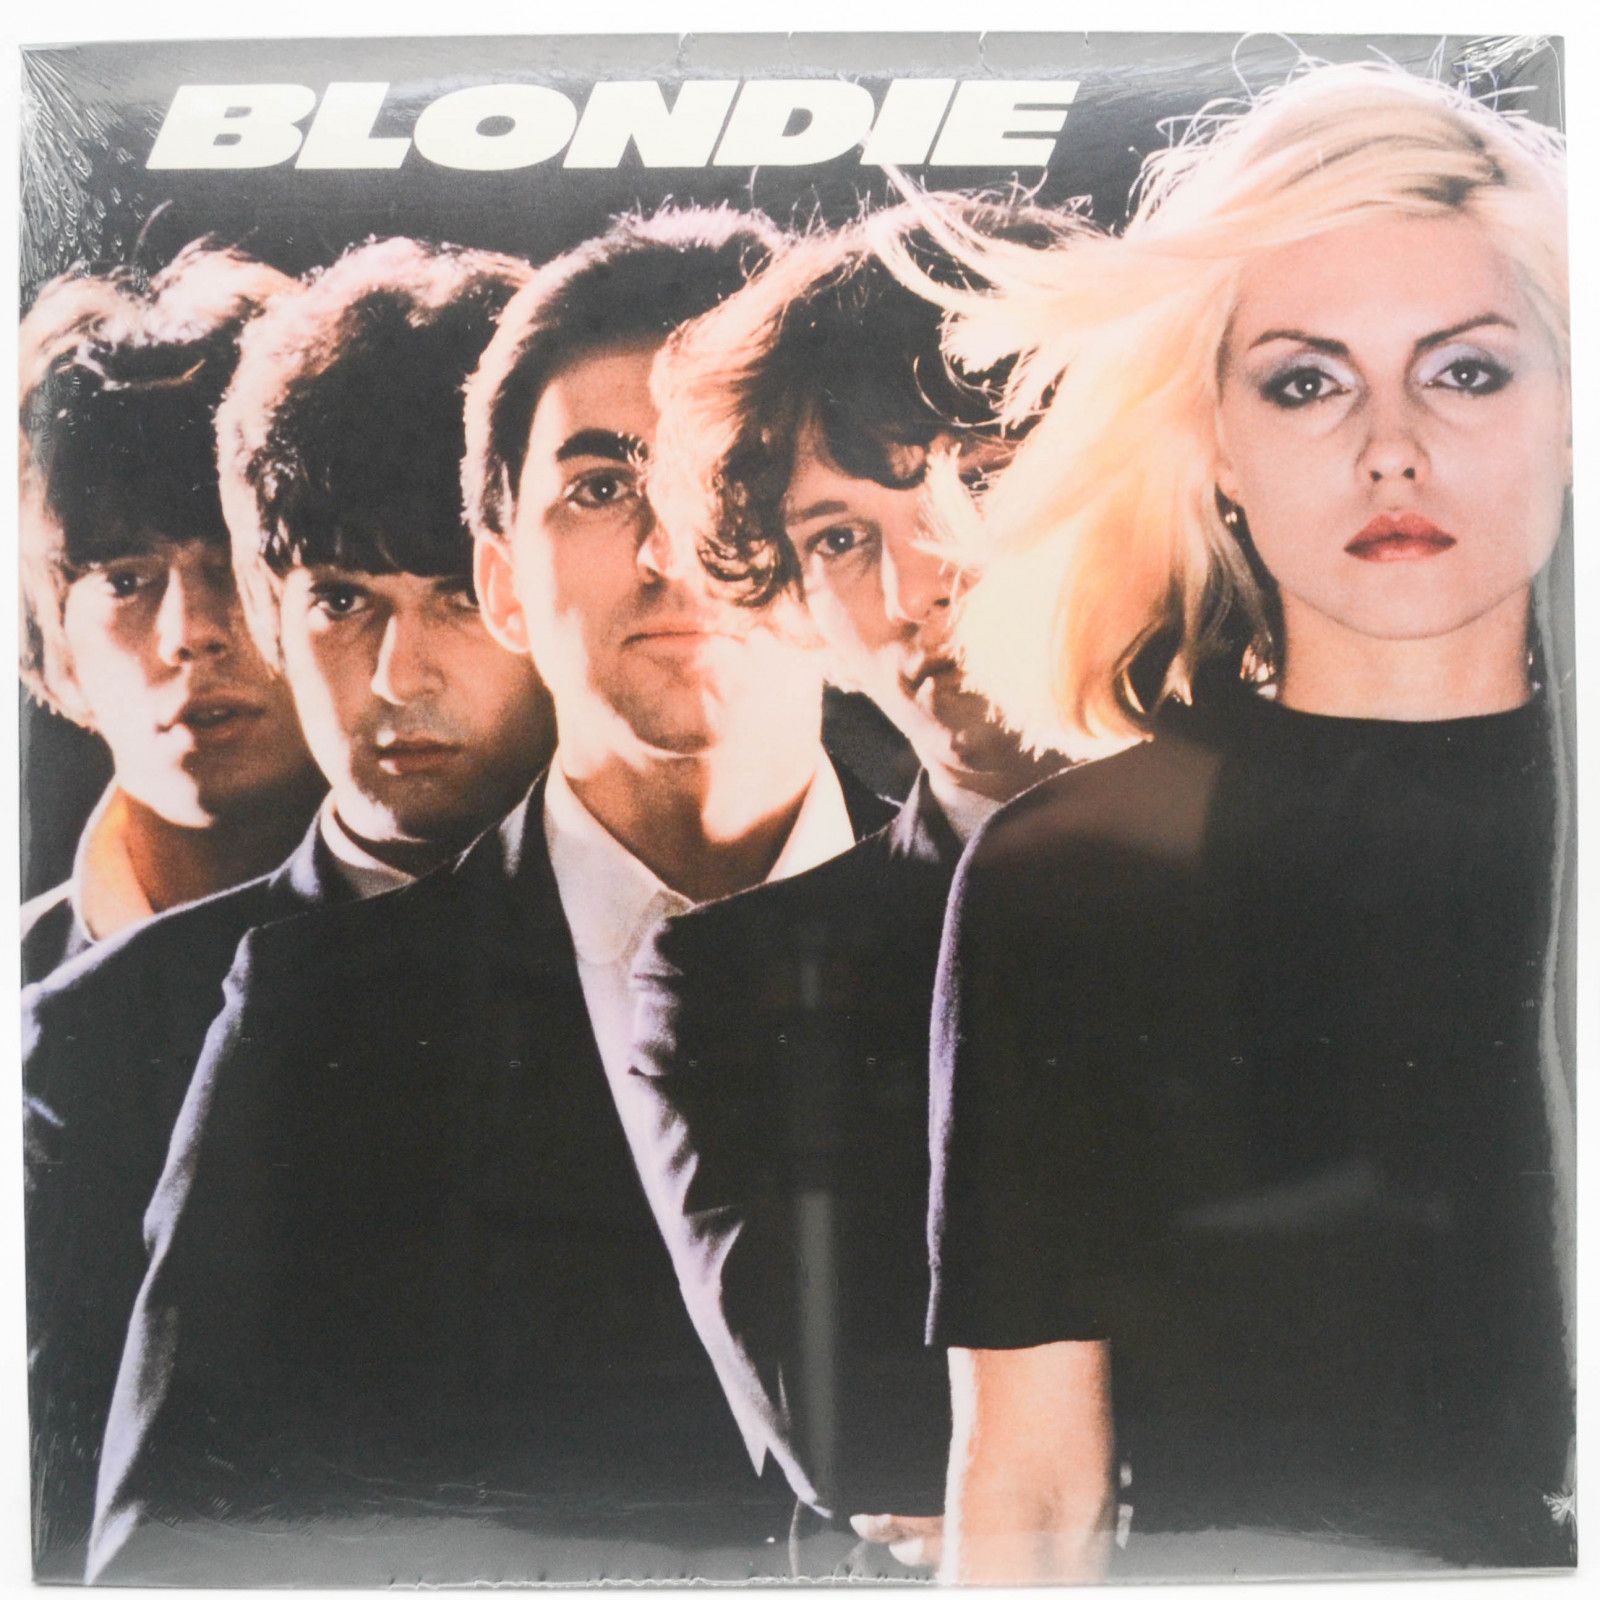 Blondie — Blondie, 1976